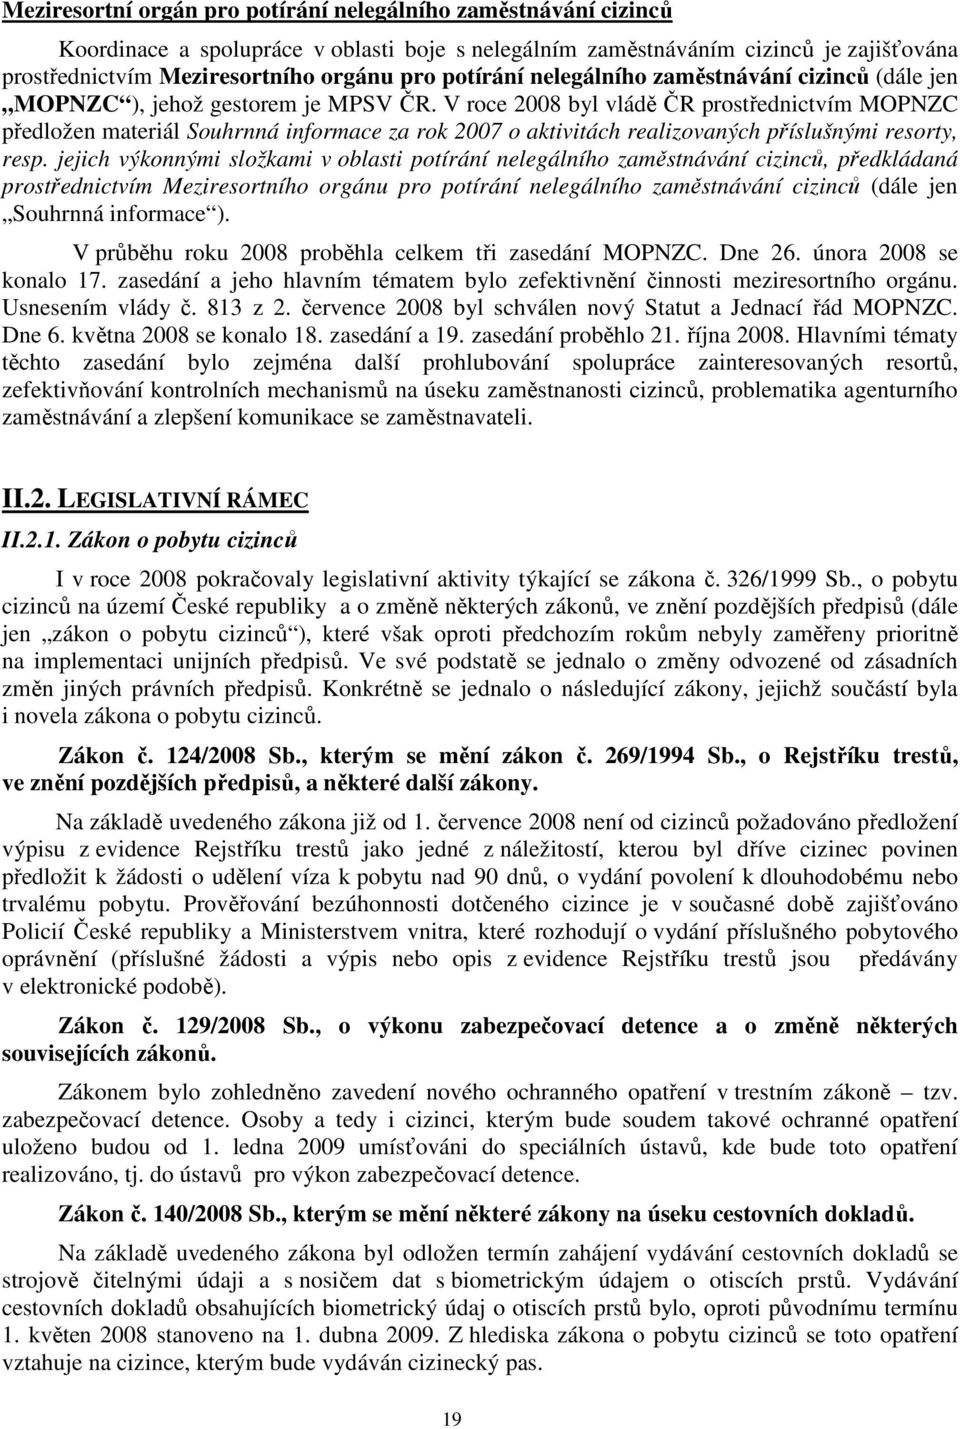 V roce 2008 byl vládě ČR prostřednictvím MOPNZC předložen materiál Souhrnná informace za rok 2007 o aktivitách realizovaných příslušnými resorty, resp.